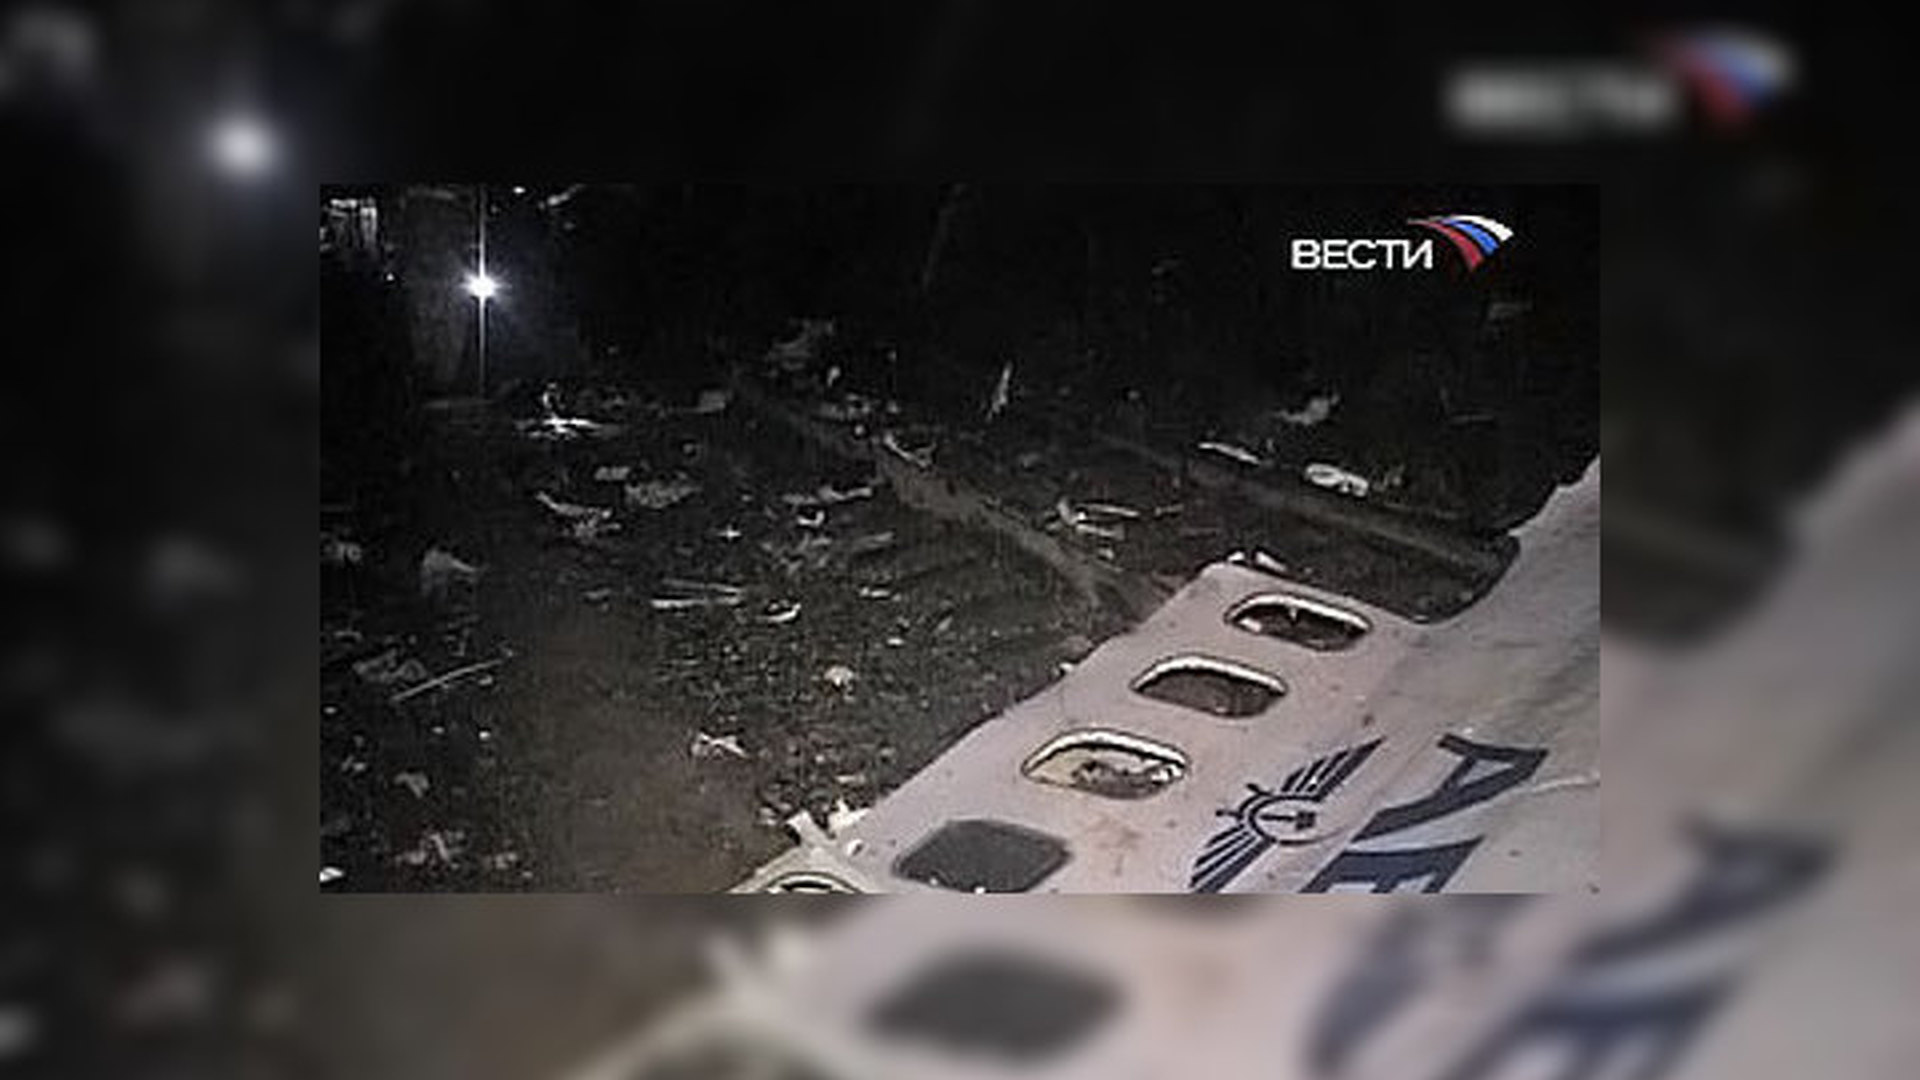 Катастрофа Boeing 737 в Перми жертвы